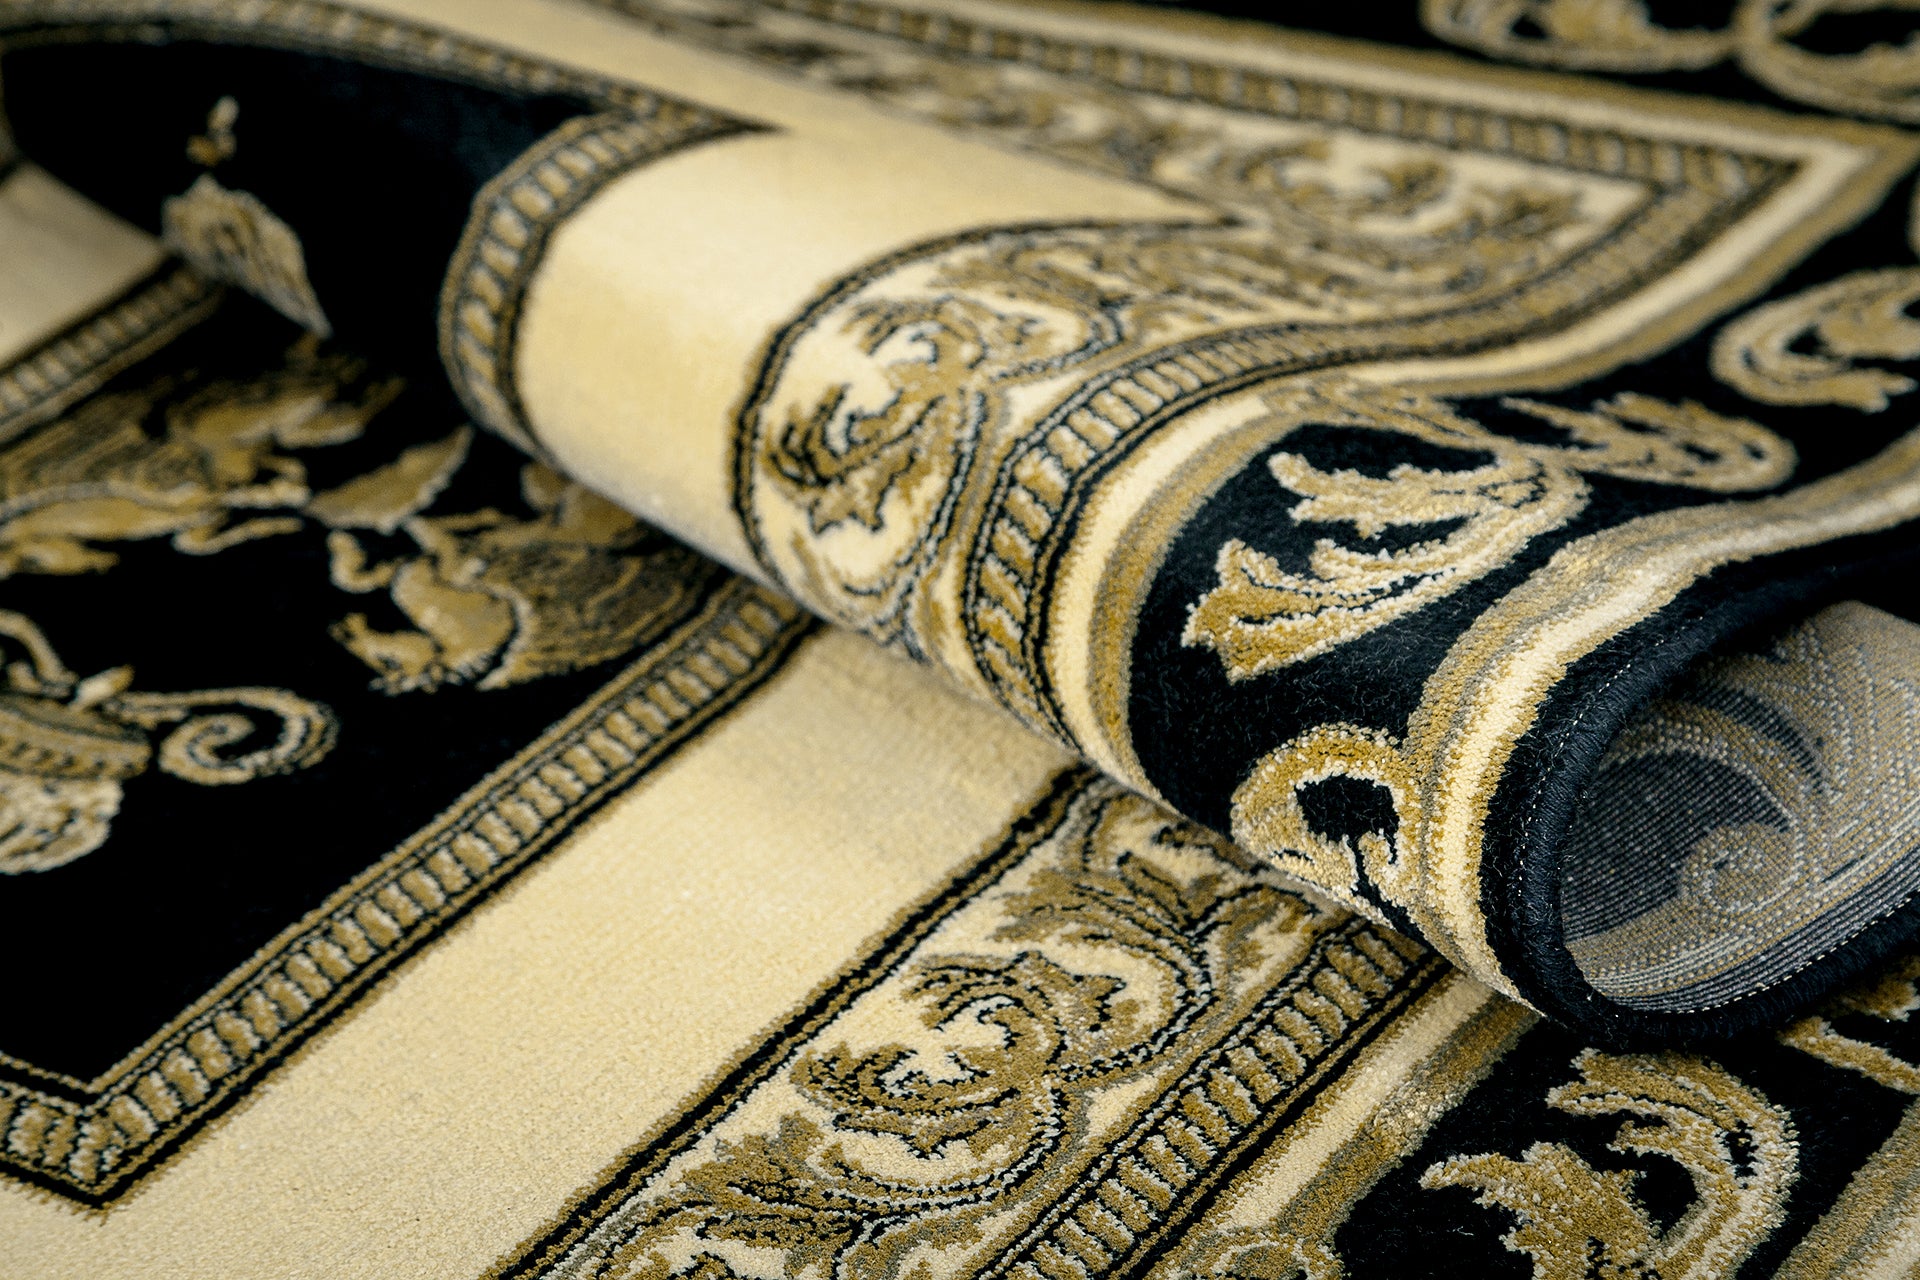 Premium Teppich Pegasus schwarz gold - 100% Viskose - hochwertig handgeknüpft